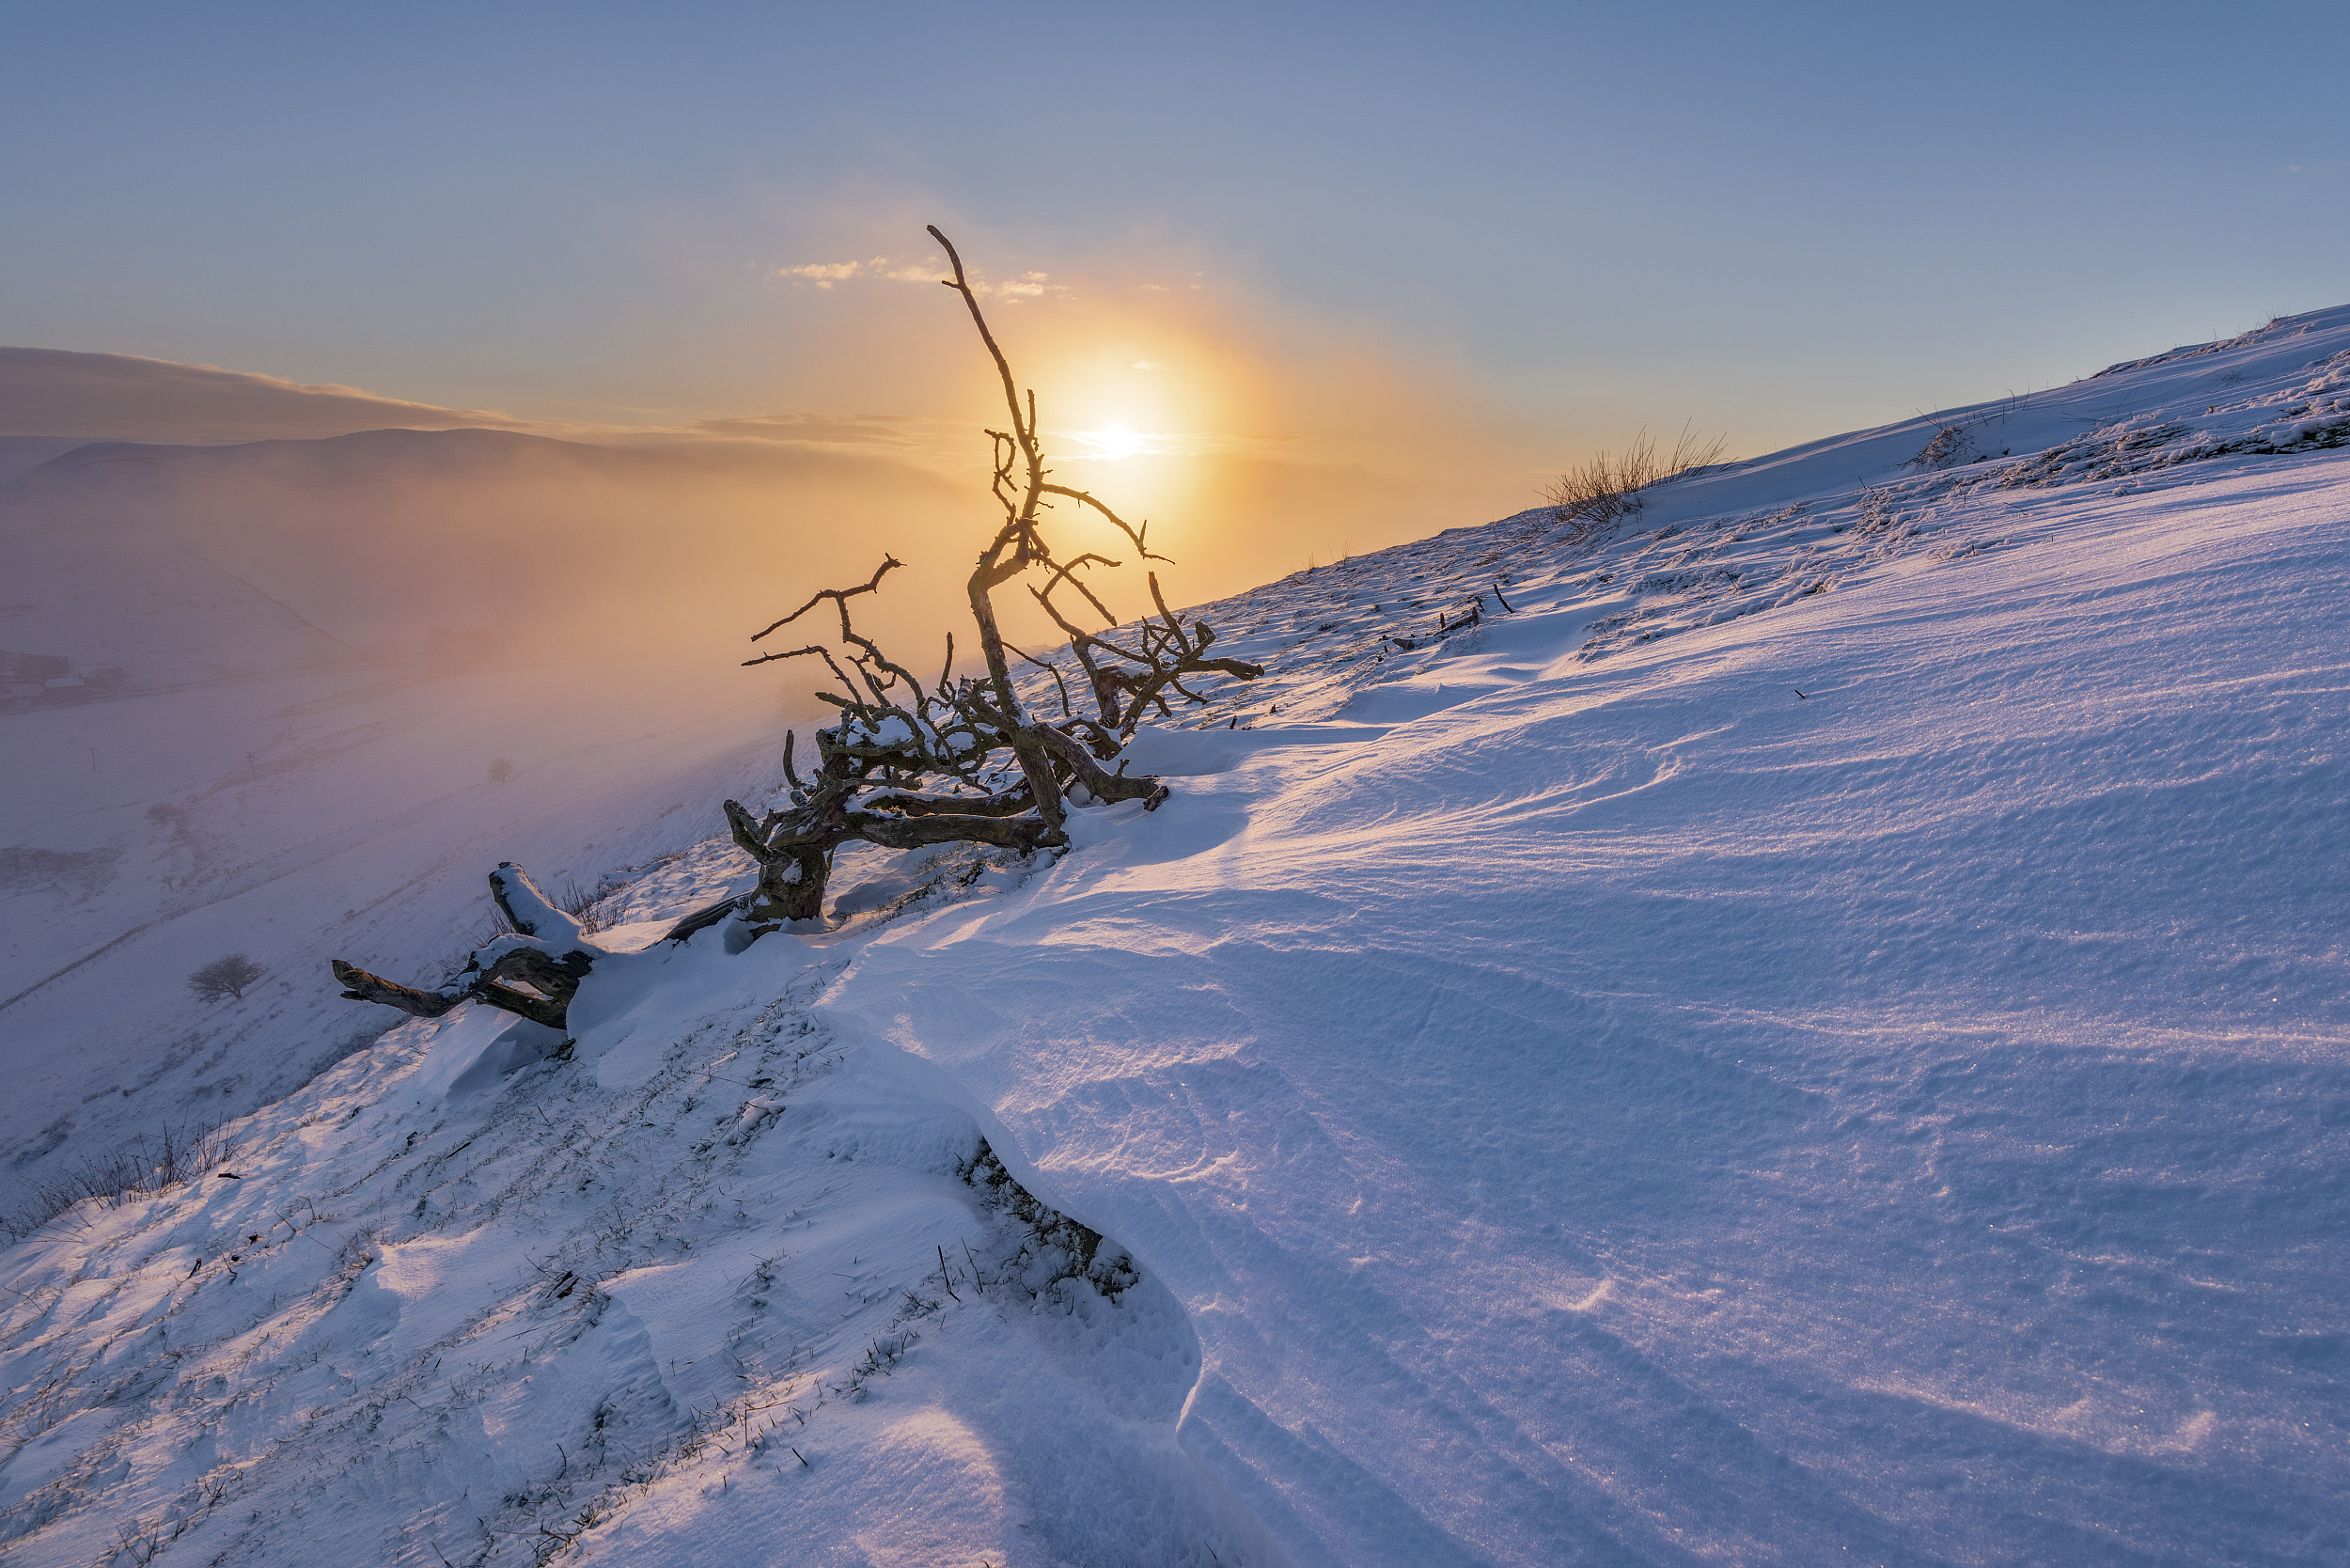 探访冬季日出时分的英国峰区 壮美景象宛若奇